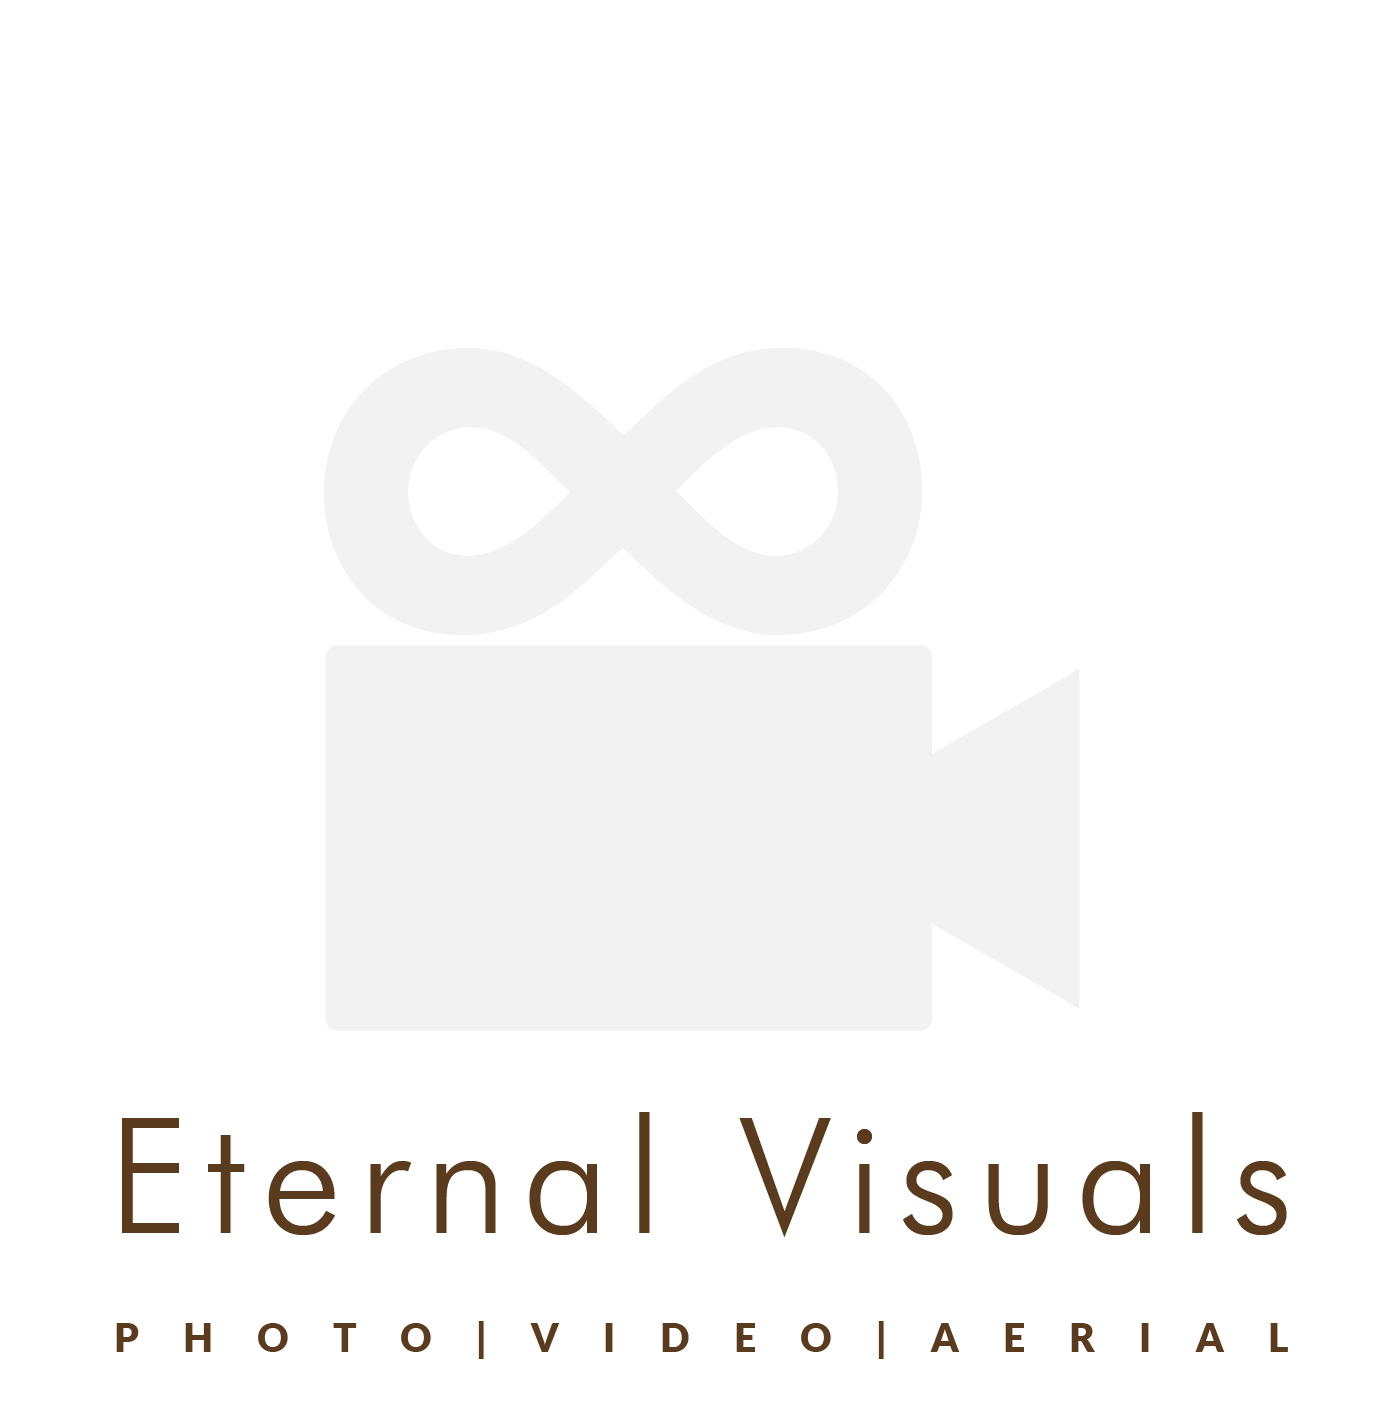 Eternal Visuals